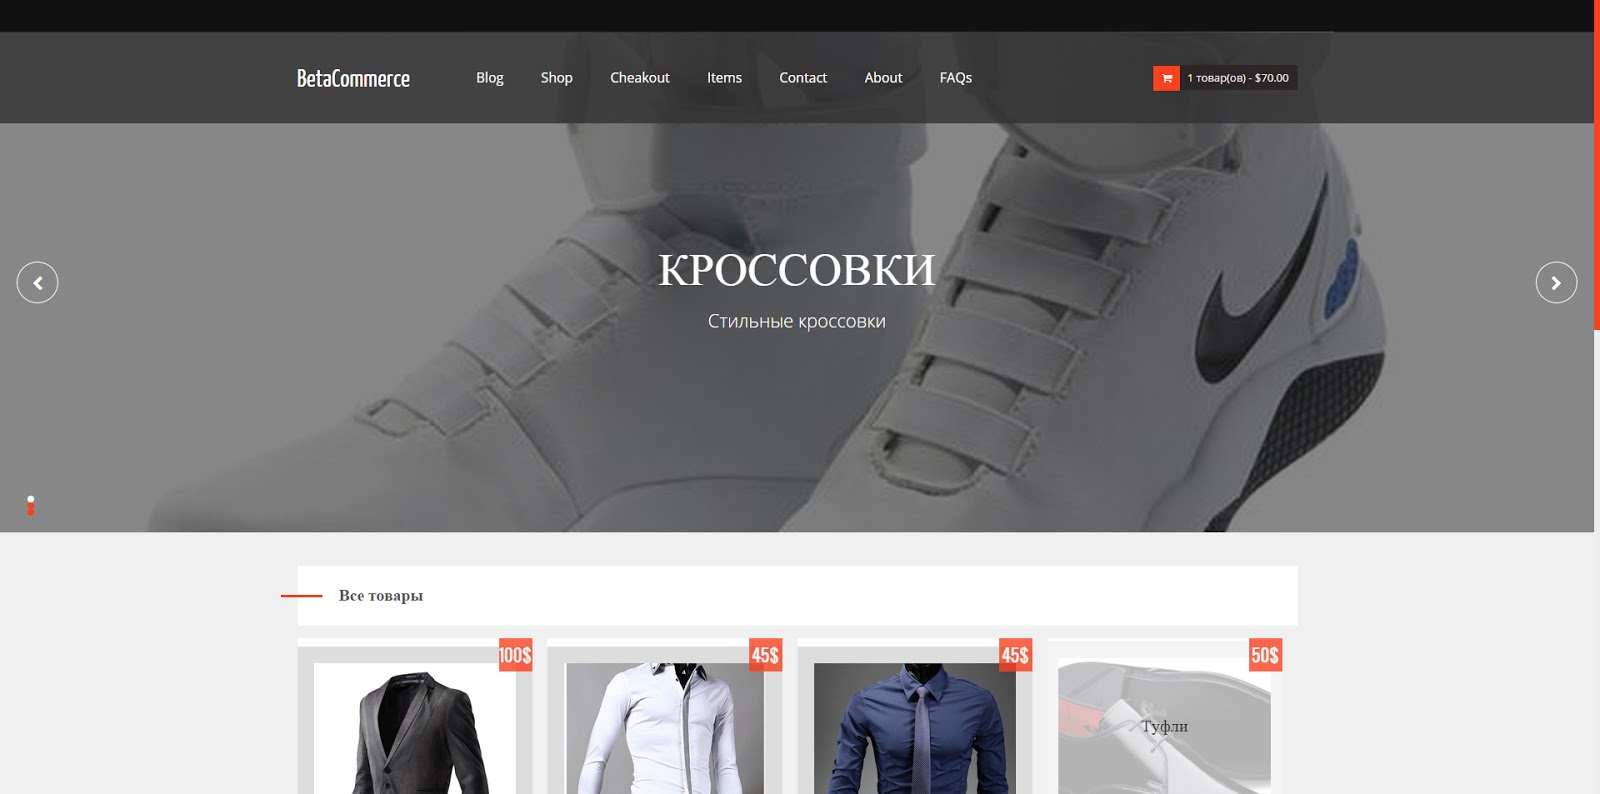 Шаблон для blogger - Betacommerce на русском